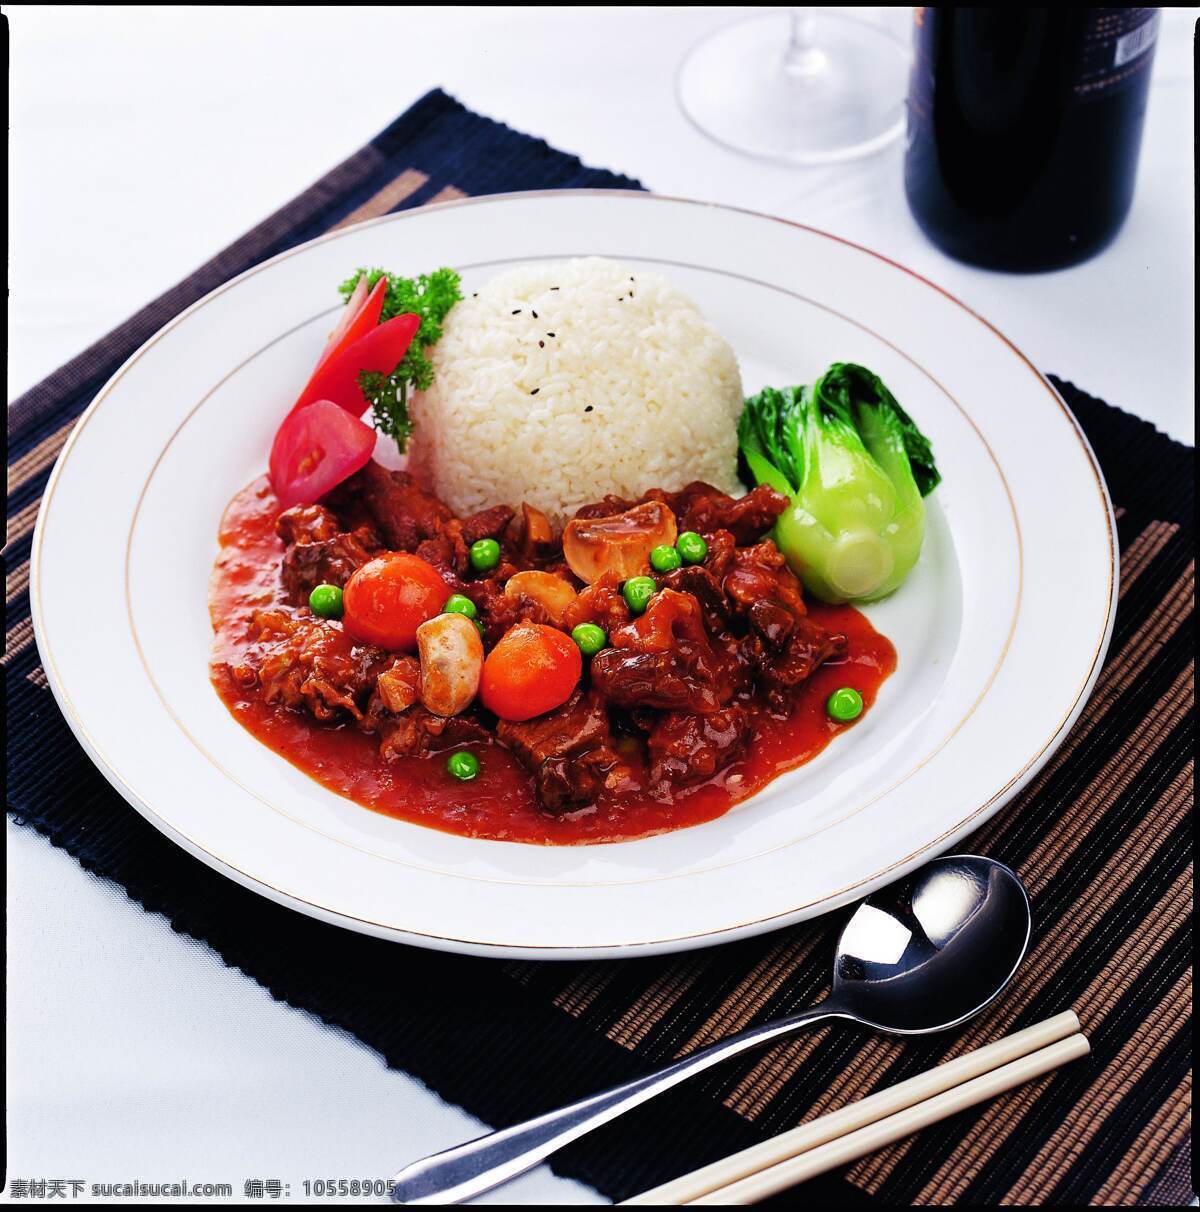 欧式 宫廷 牛腩 烩 茄汁 烩茄汁 盖浇饭 菜品图片 餐饮美食 传统美食